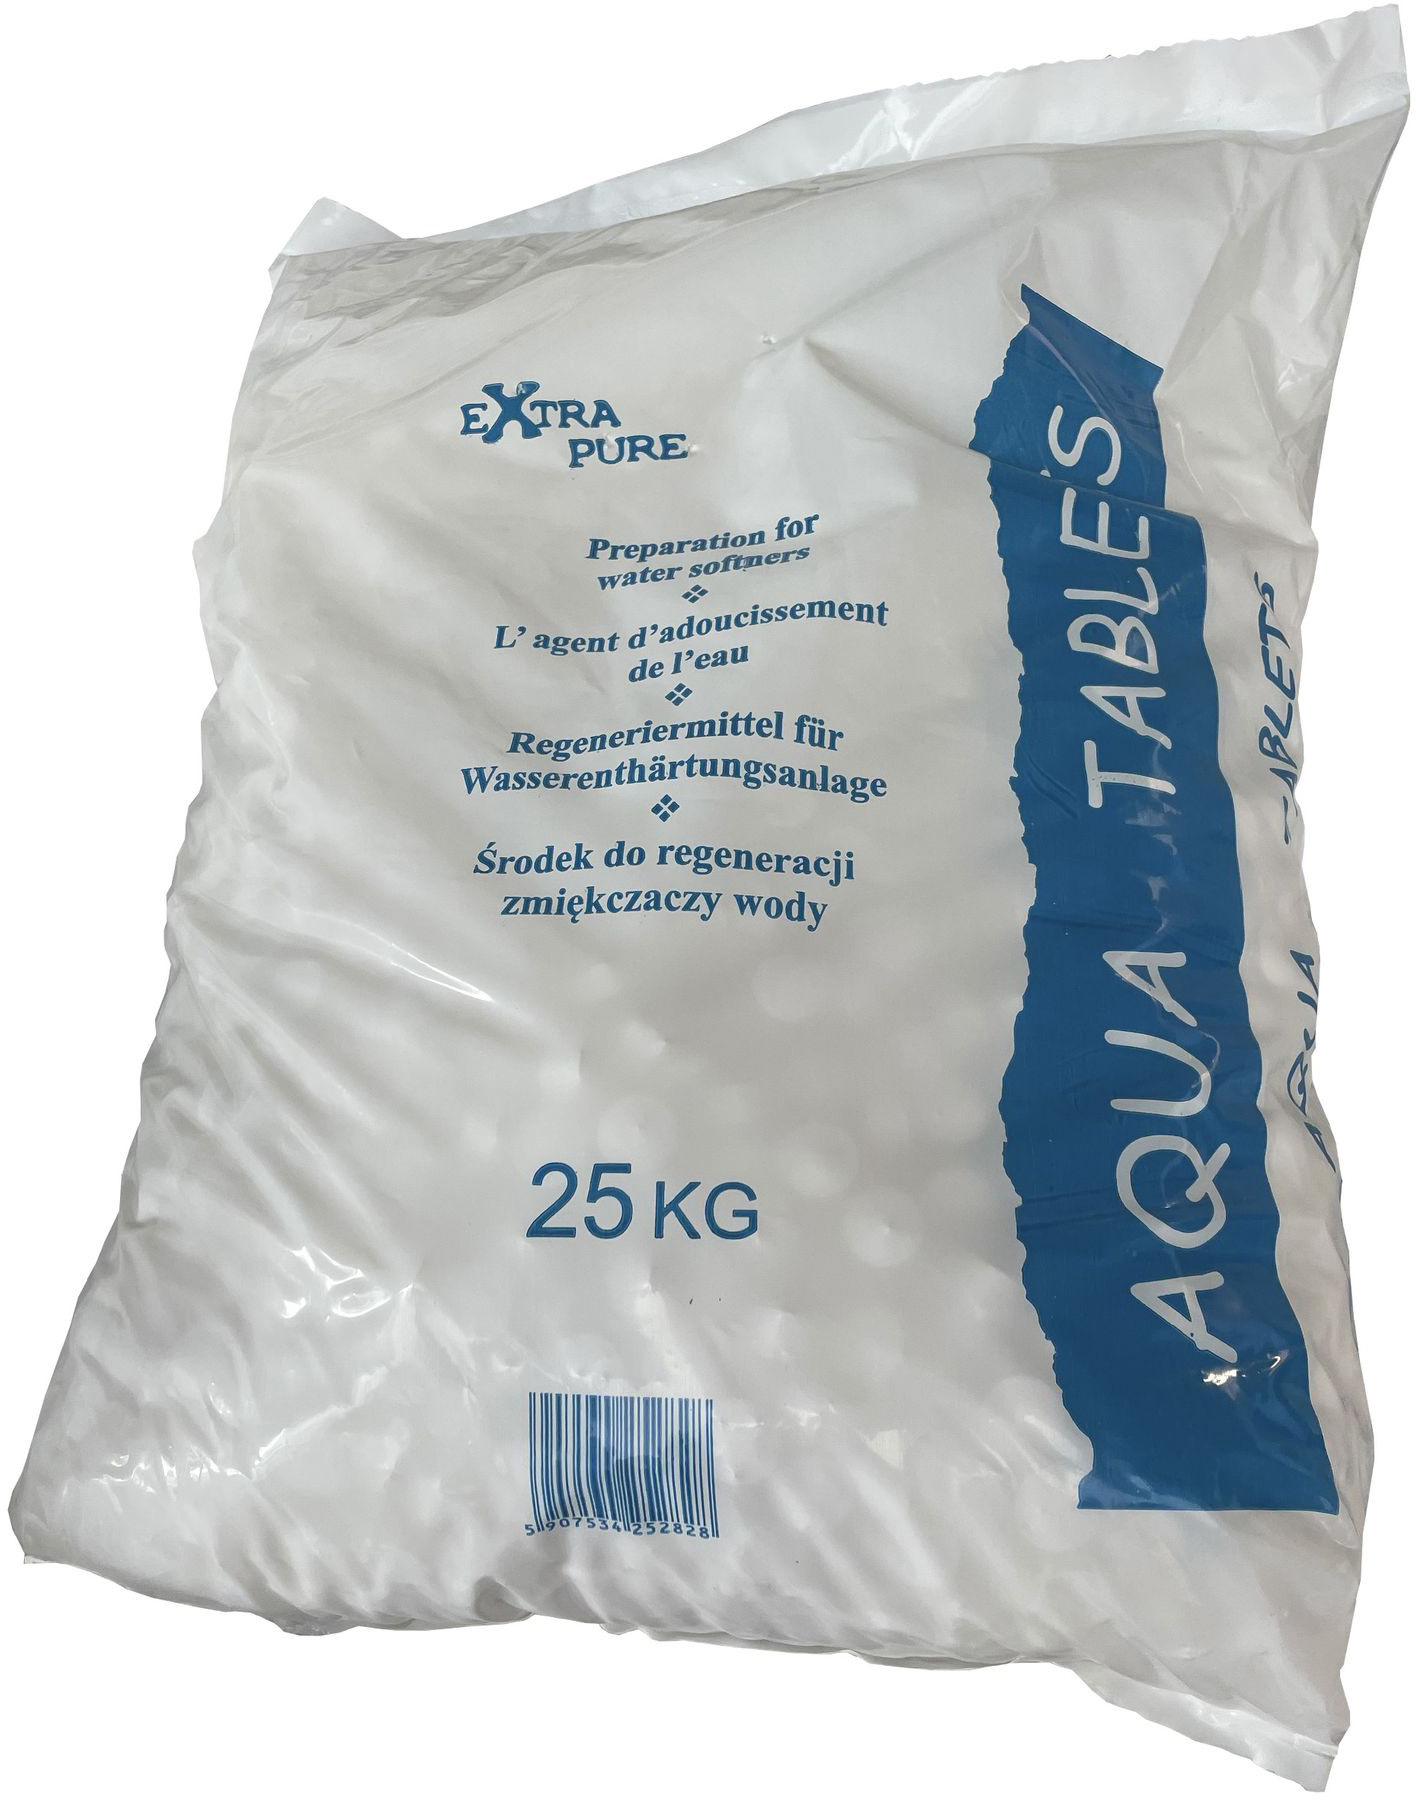 Цена засыпка для фильтра Tab–Sol соль таблетированная 25кг в Киеве